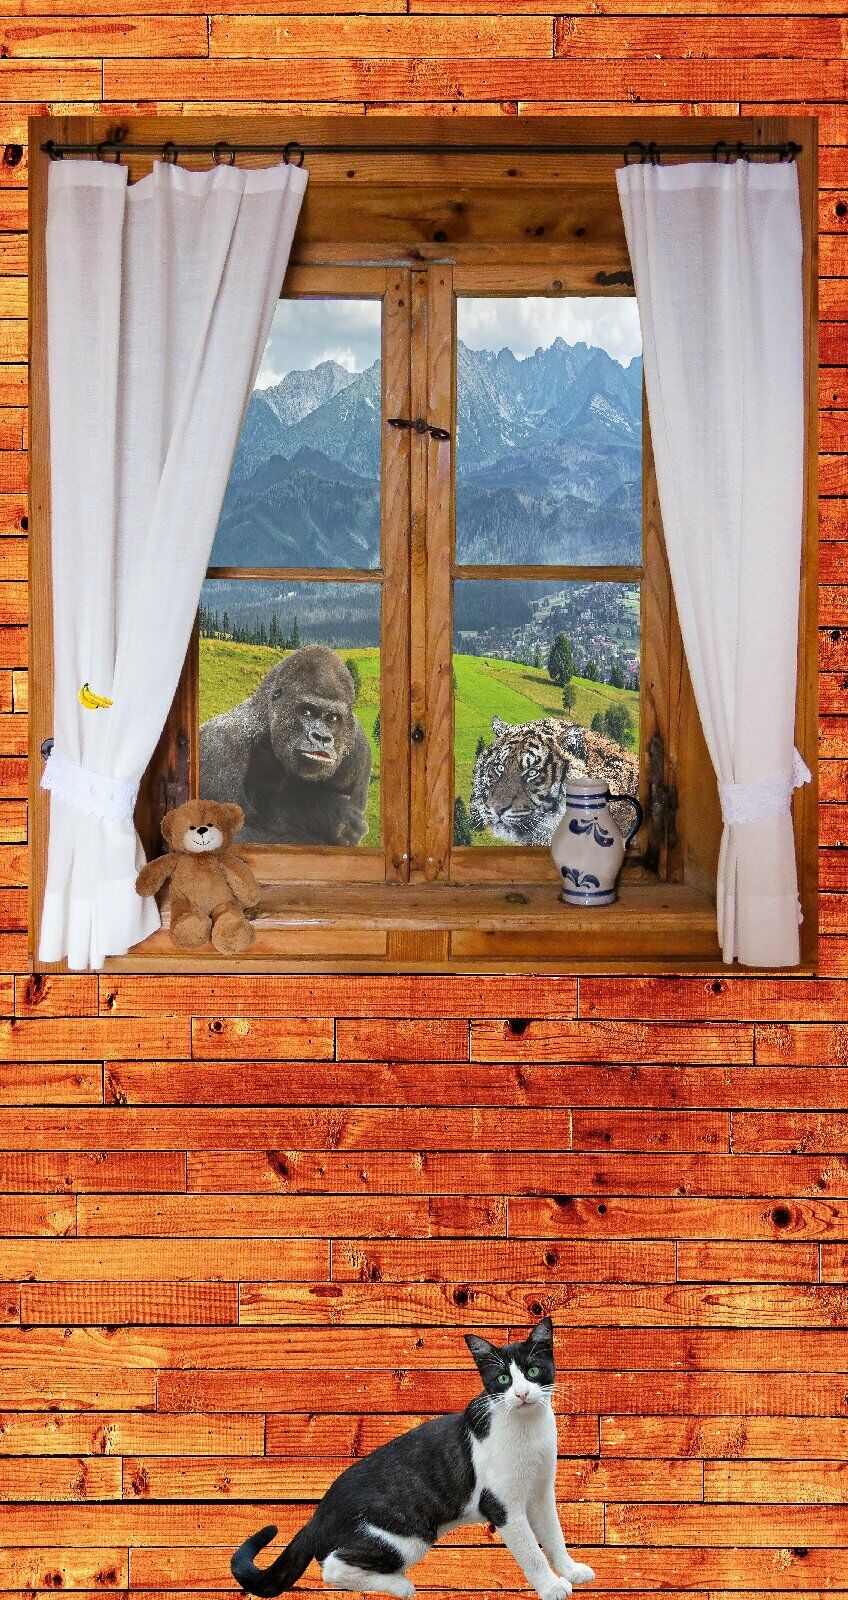 Türtapete Fenster Türposter 100x200cm 100x200cm selbstklebend Tiere Gorilla Tiger Klima warm